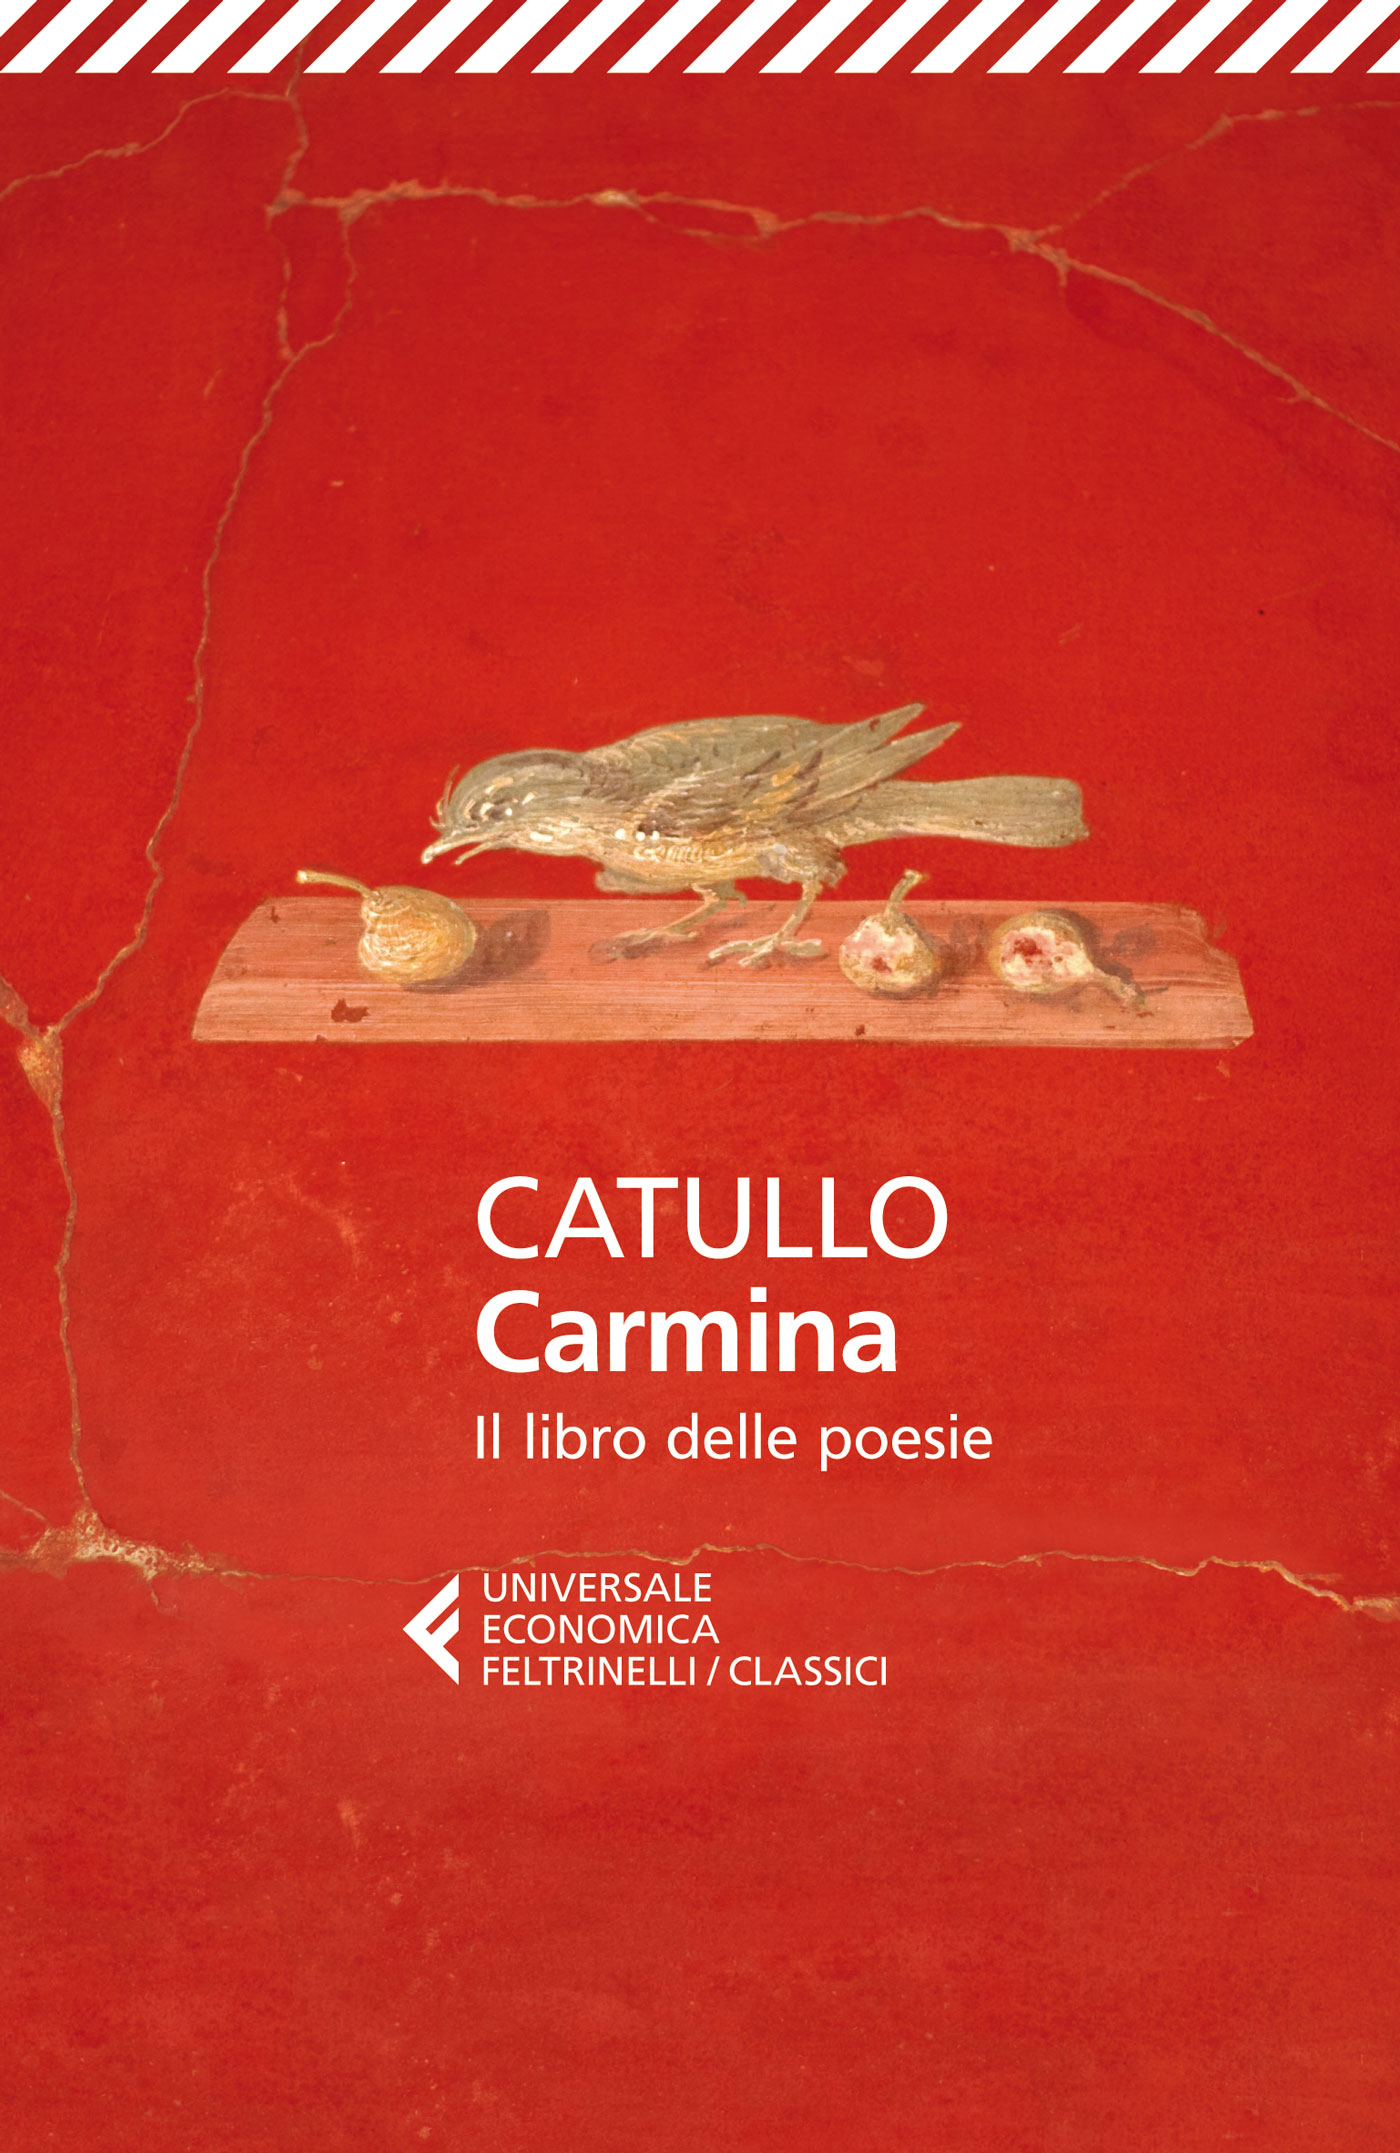 Catullo, Carmina